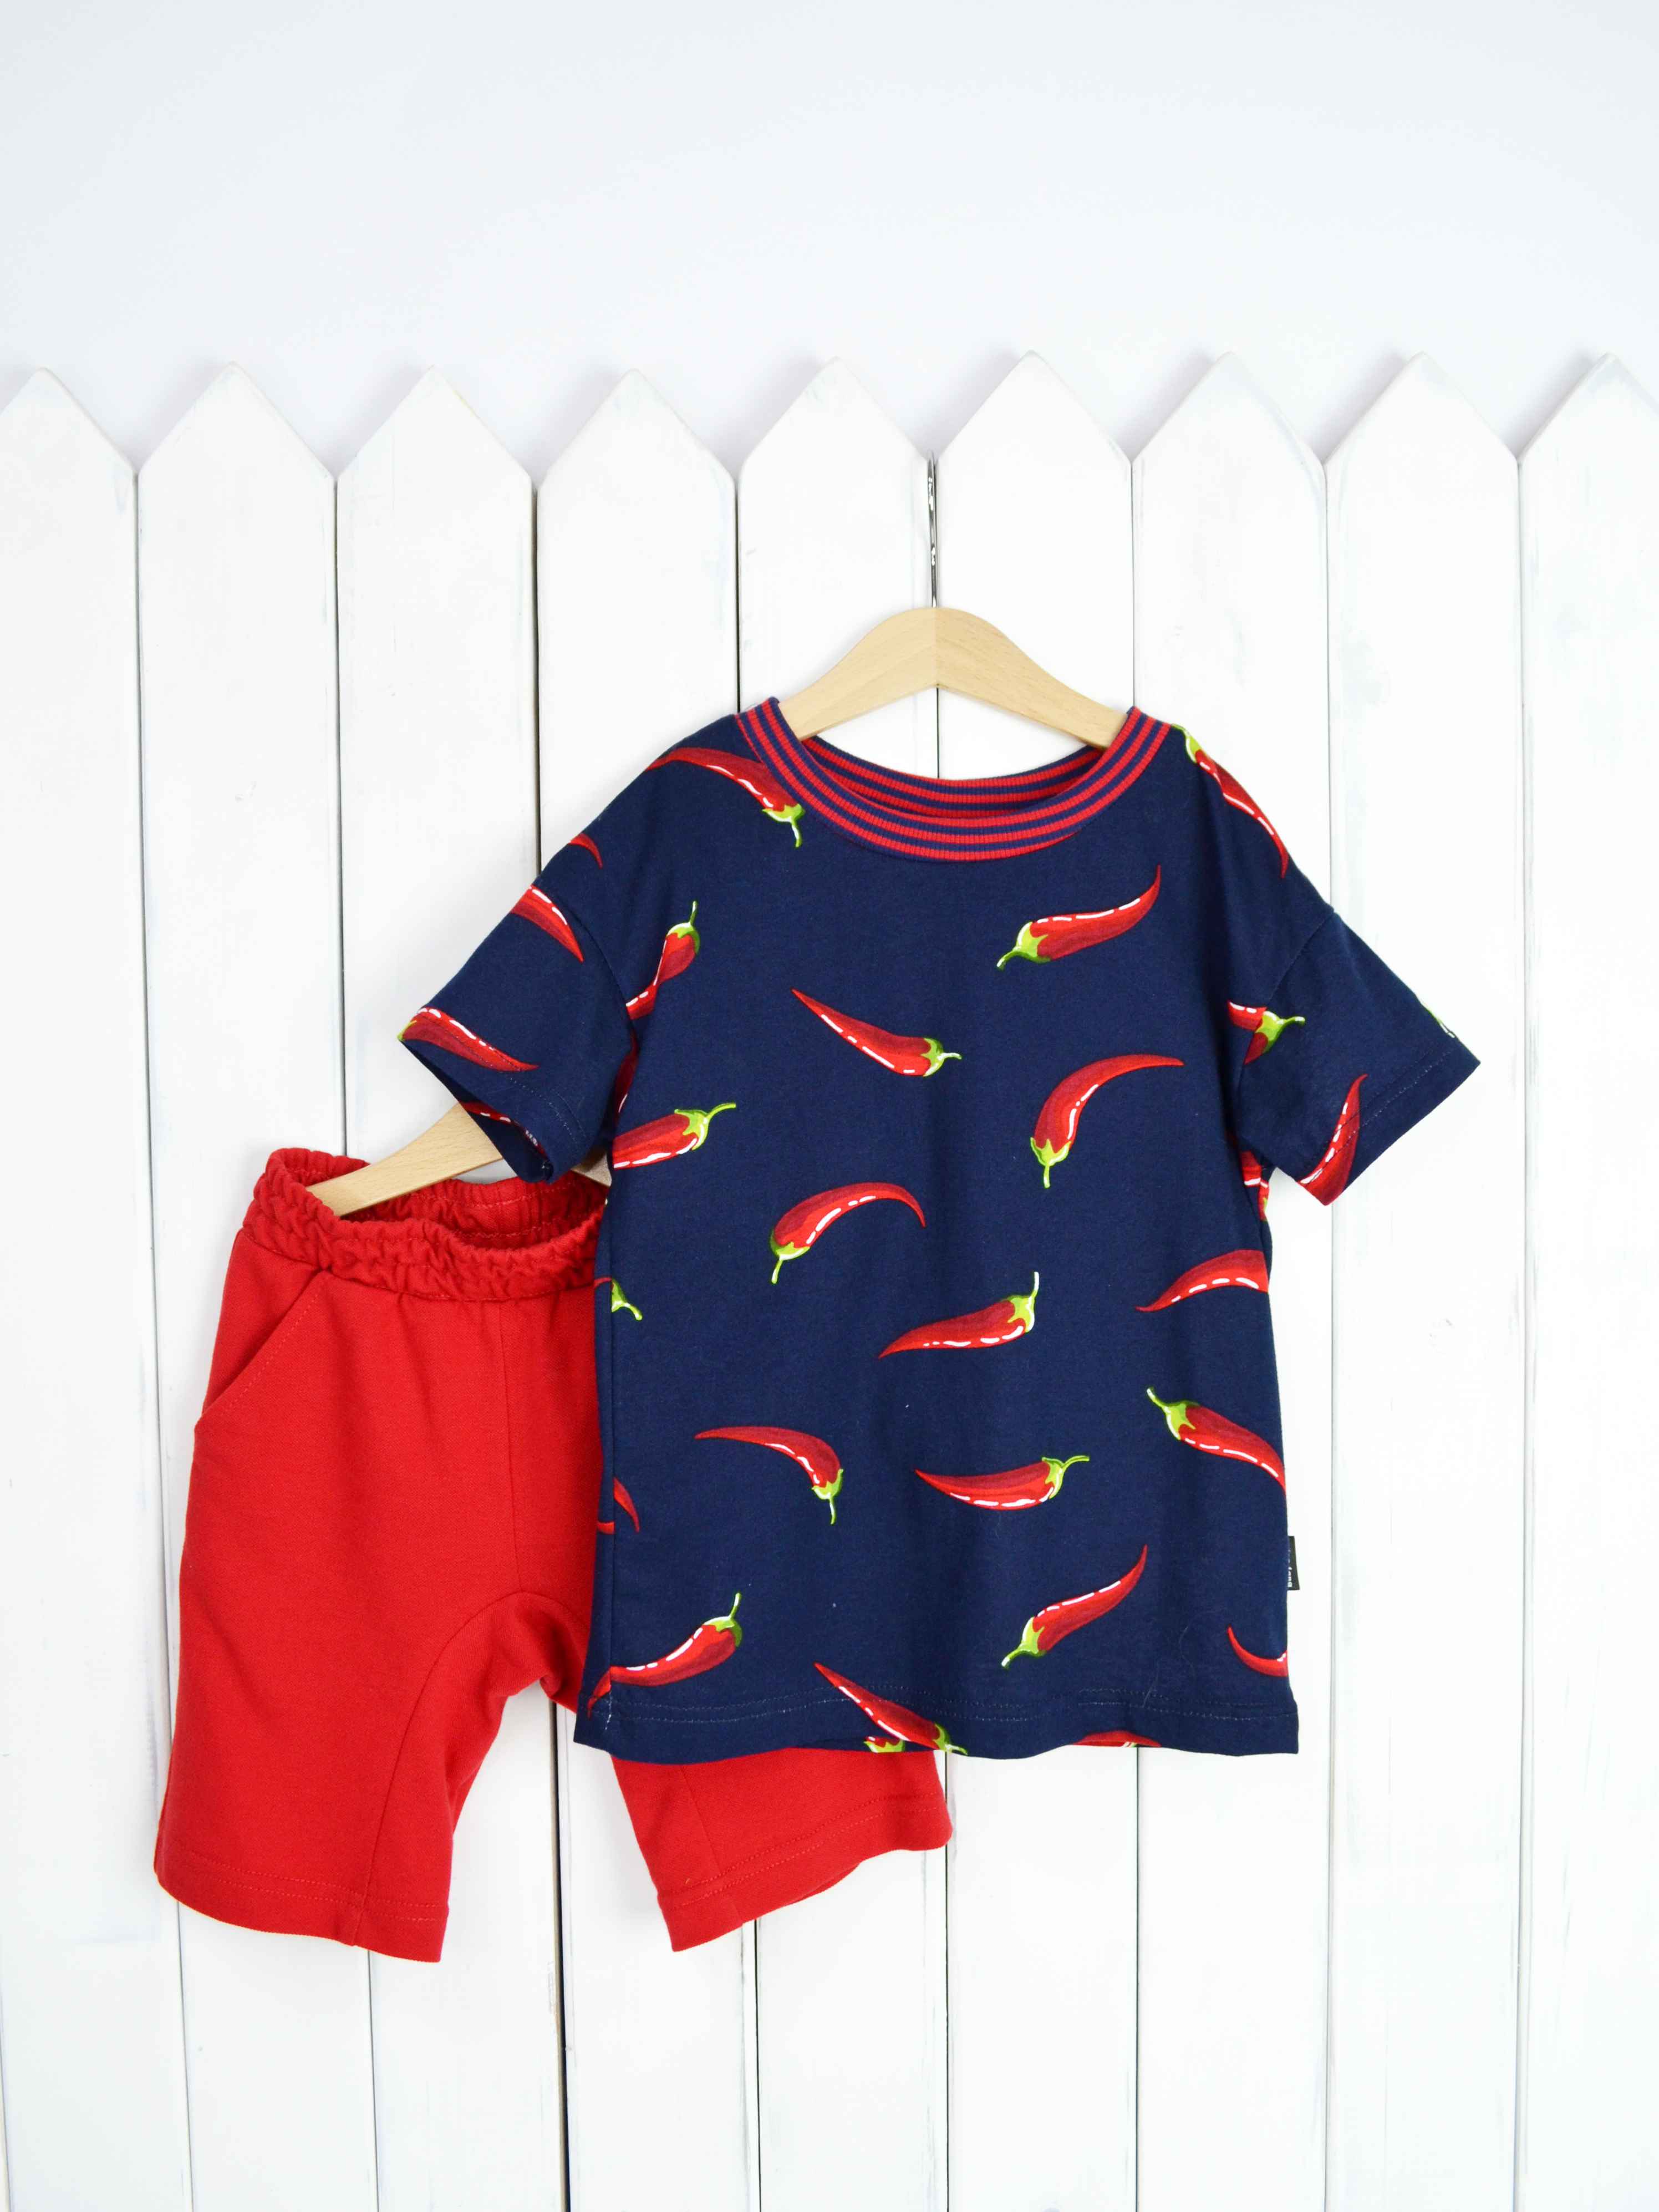 КД354/1-К Комплект детский р.116 Крутые перцы футболка+шорты/красное пике Бэби Бум